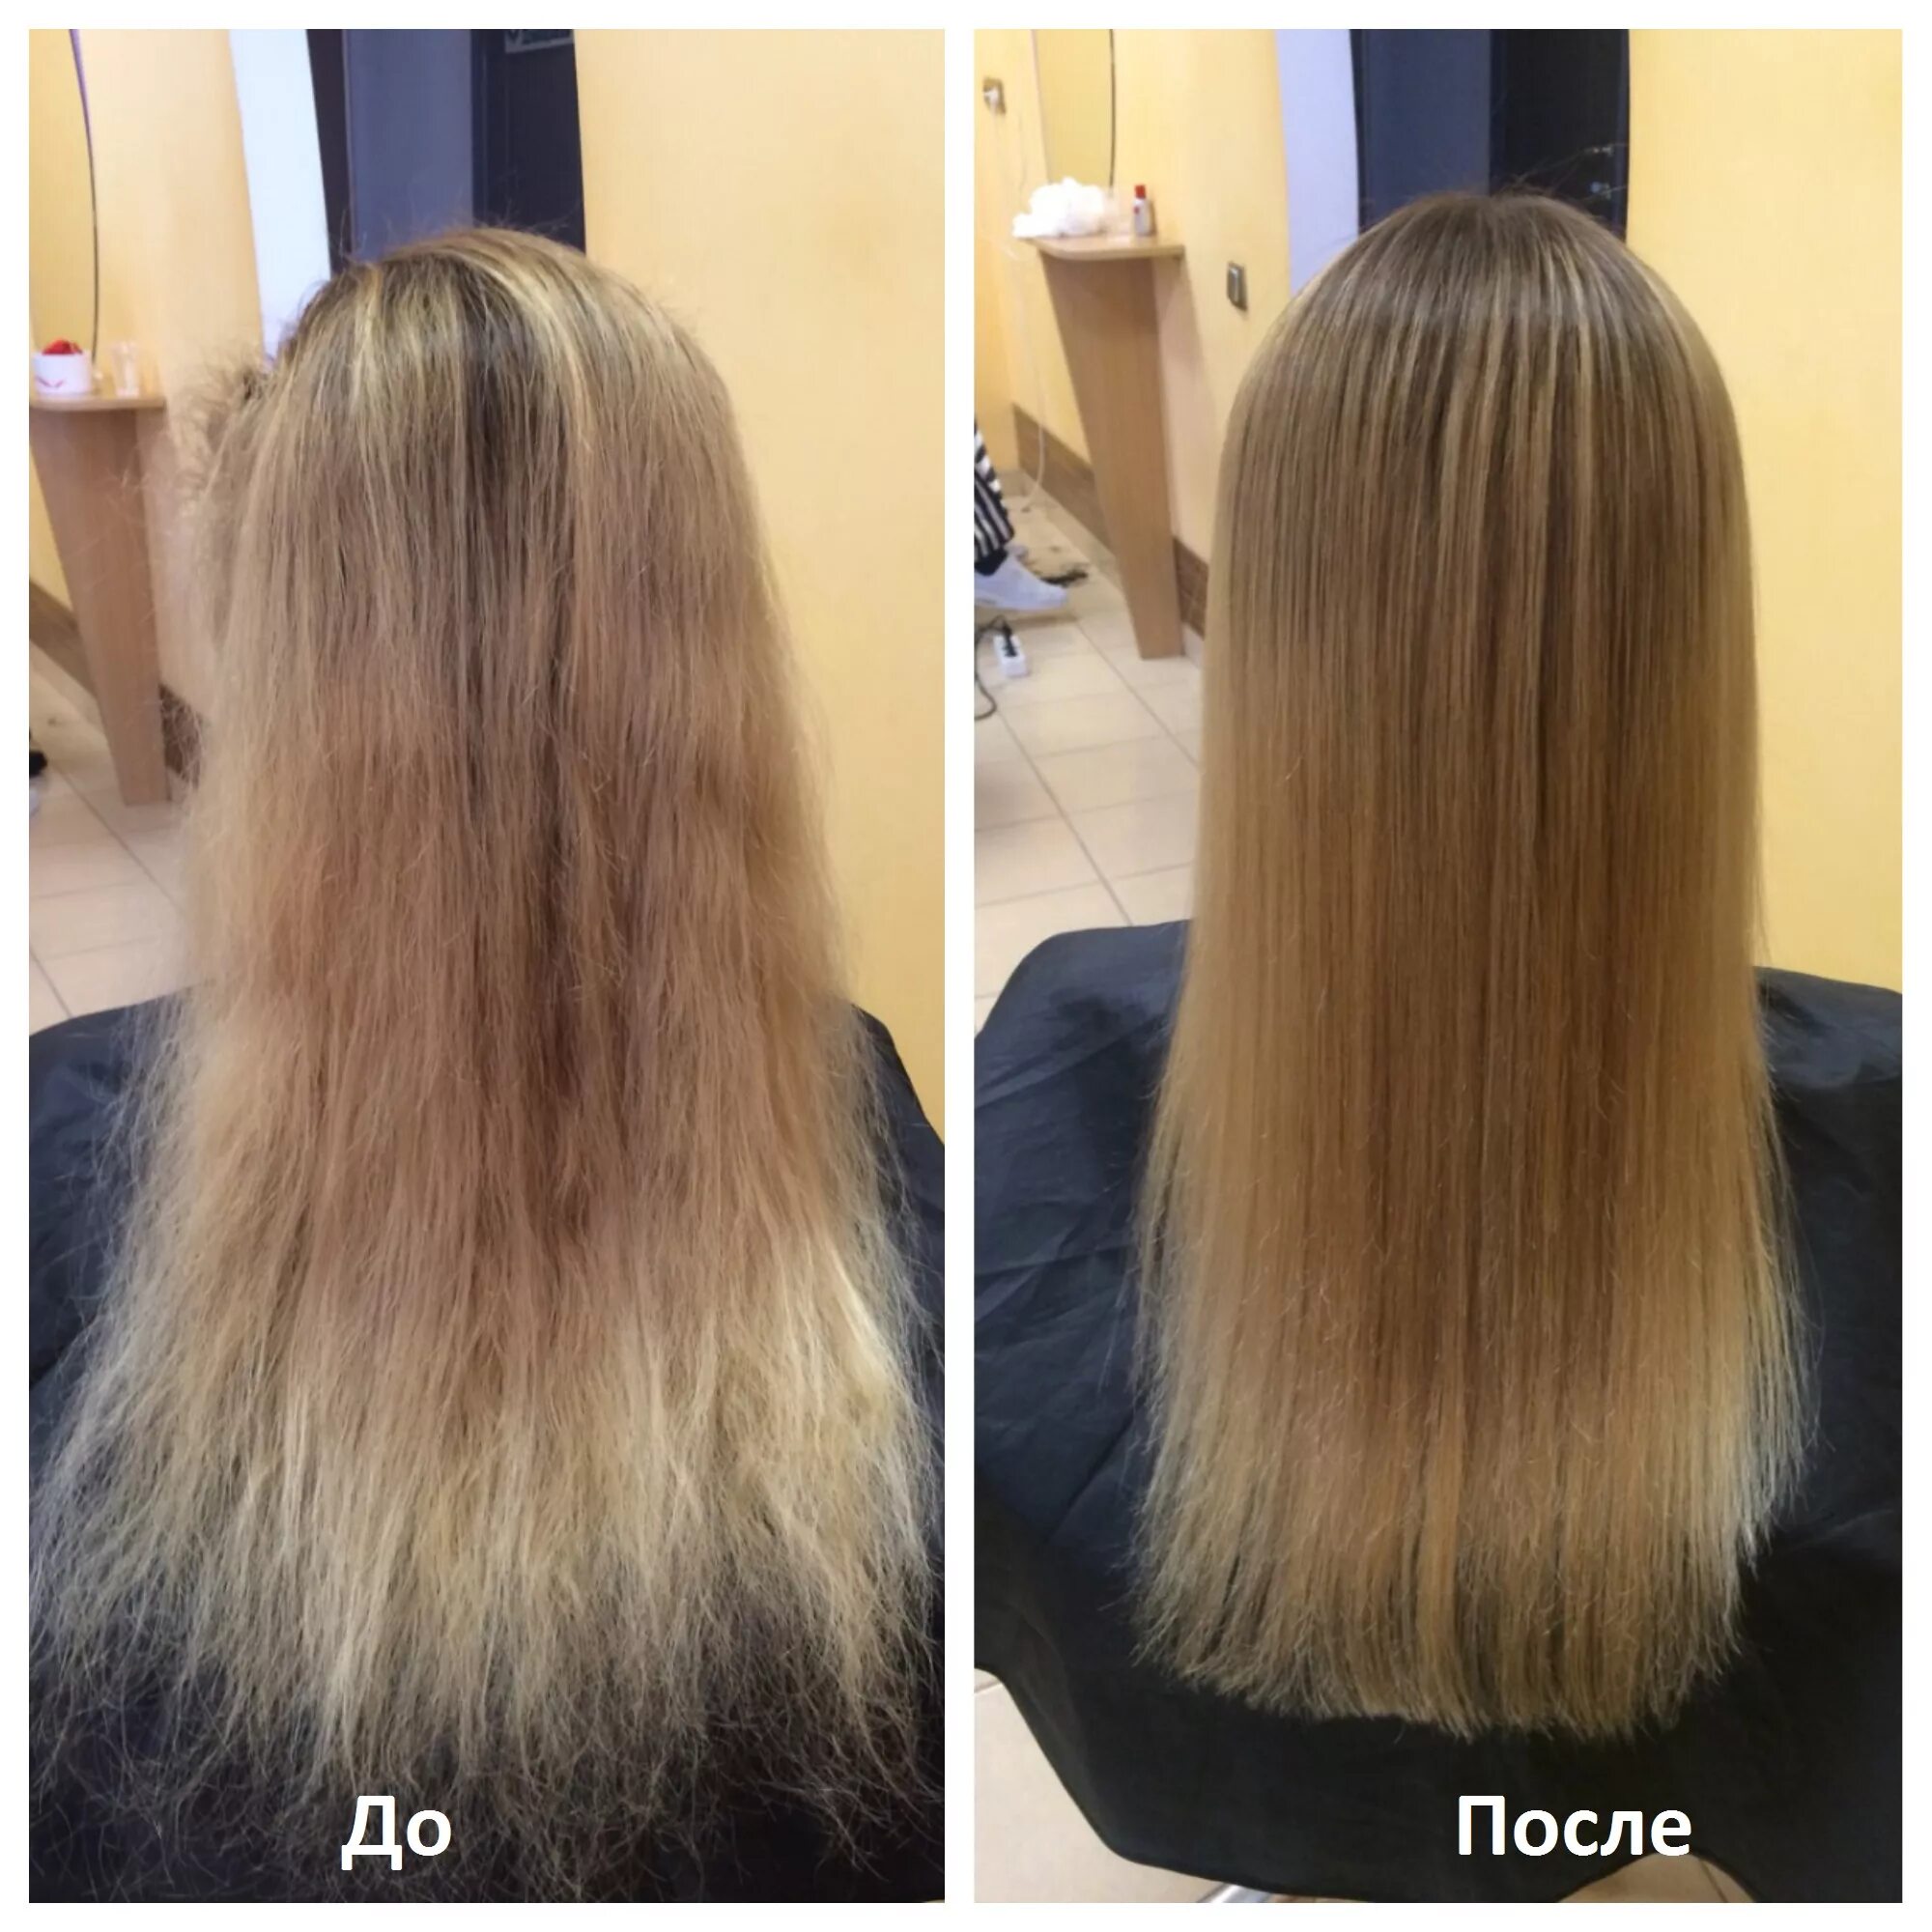 Сильные волосы отзывы. Стрижка кончиков волос до и после. Подравнивание волос до и после. Волосы до и после подравнивания кончиков. Кератин на русые волосы.